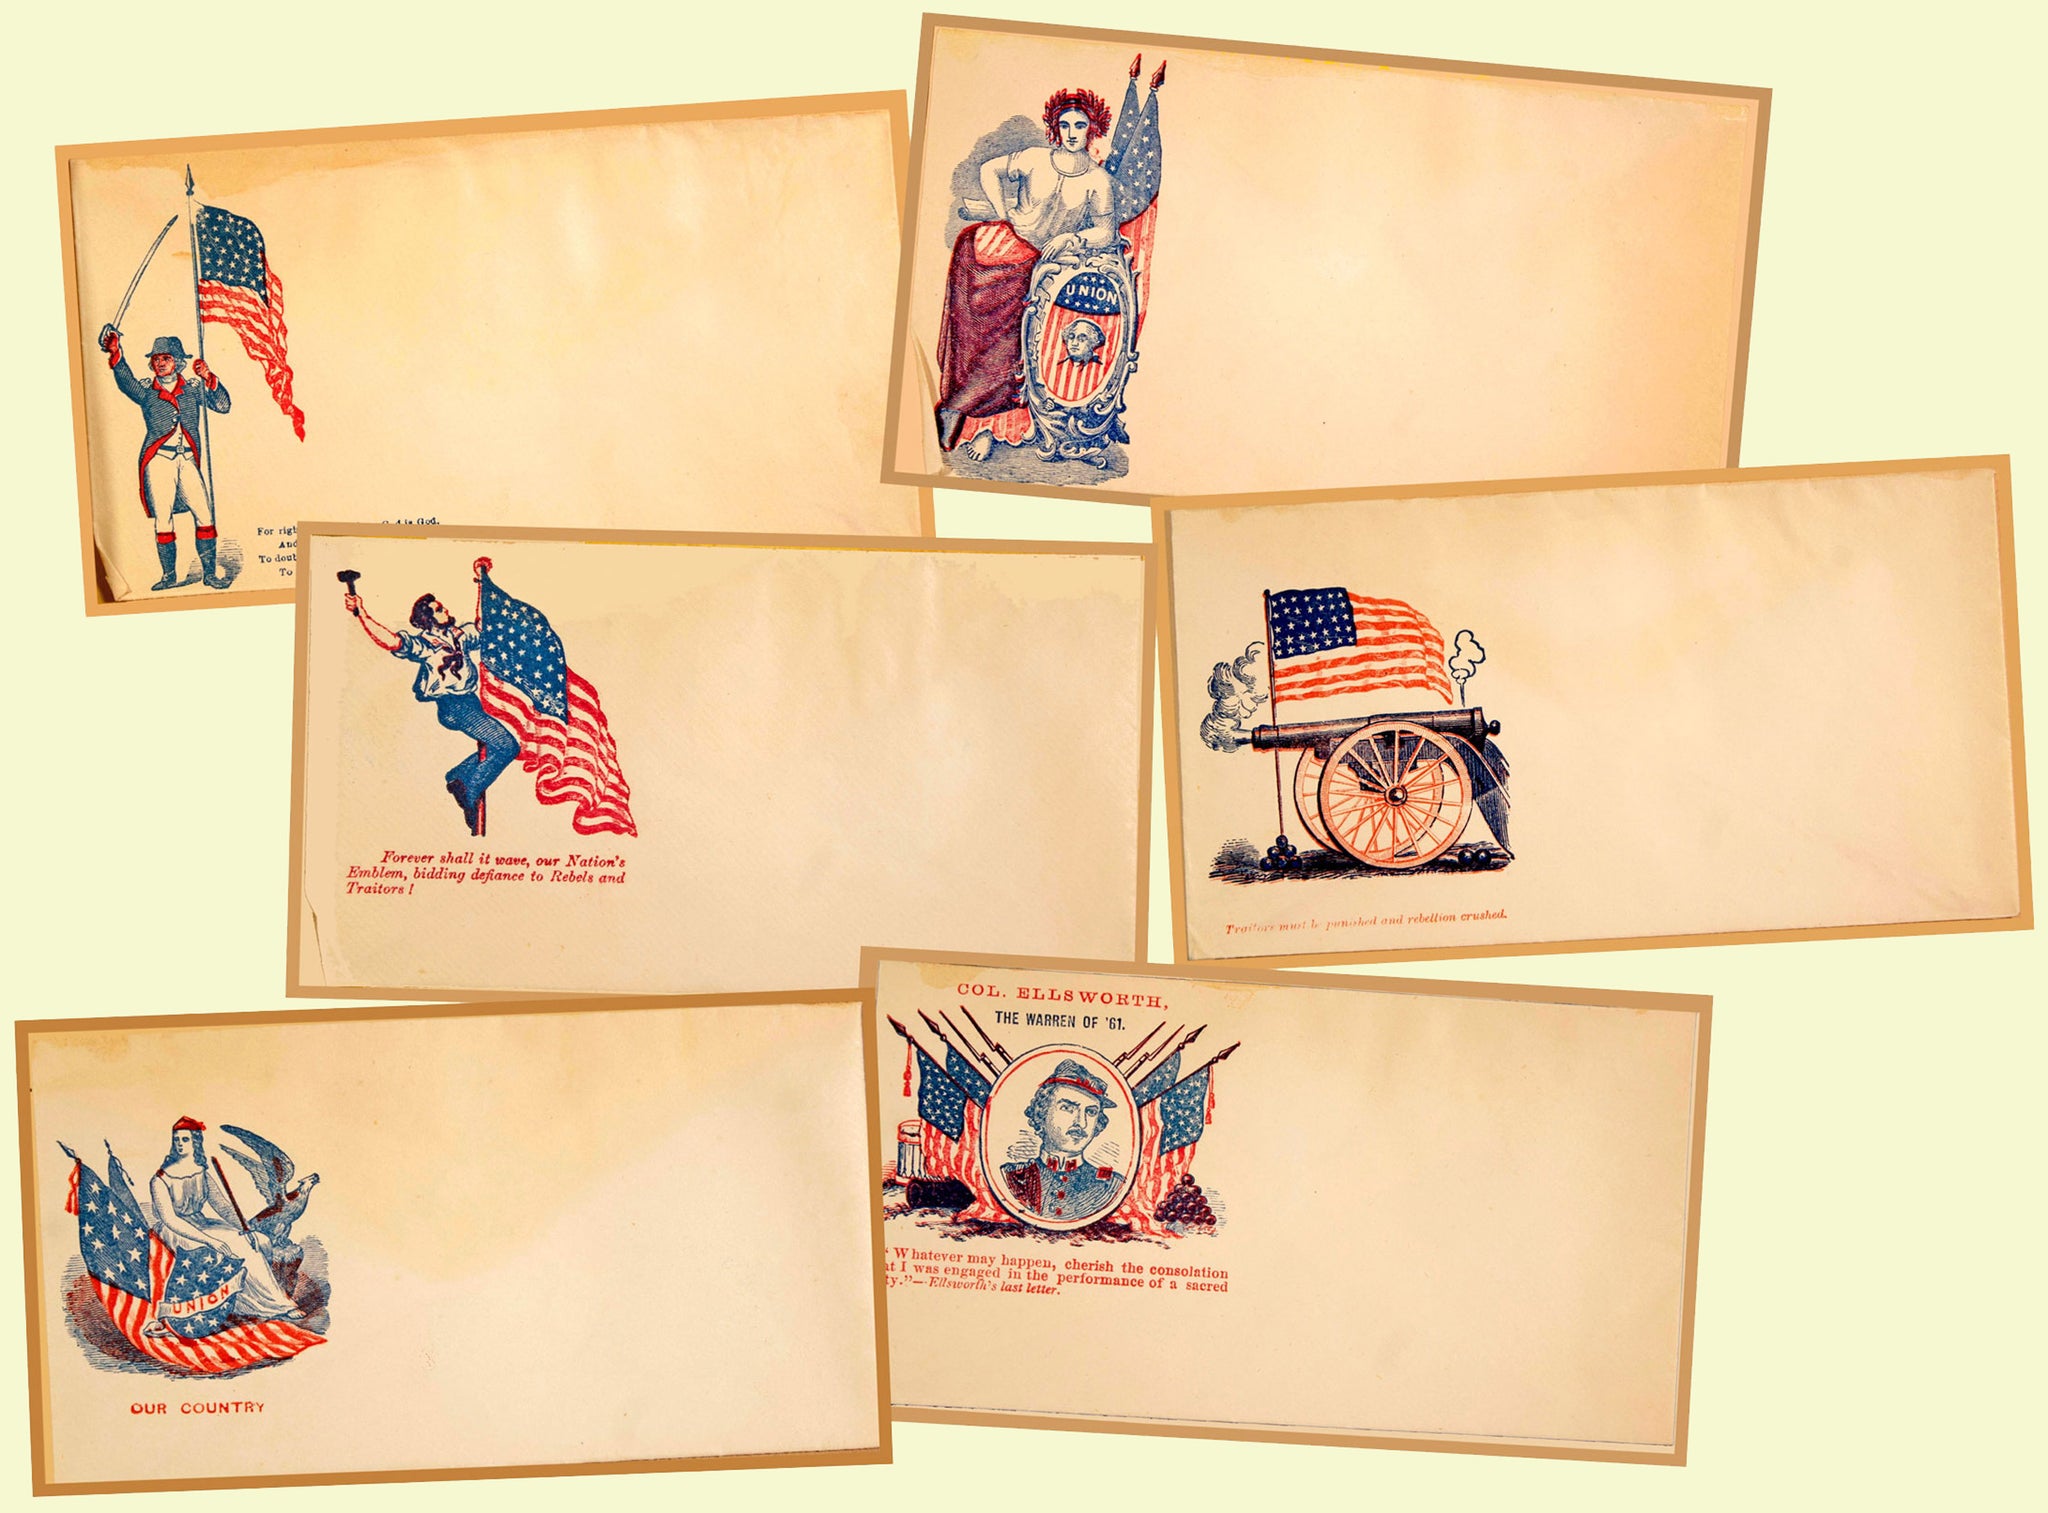 6 Antique Patriotic Envelope Stickers, Civil War Historical Letter Envelopes for Altered Arts, Card & Envelope Making or Decorations, 2P88